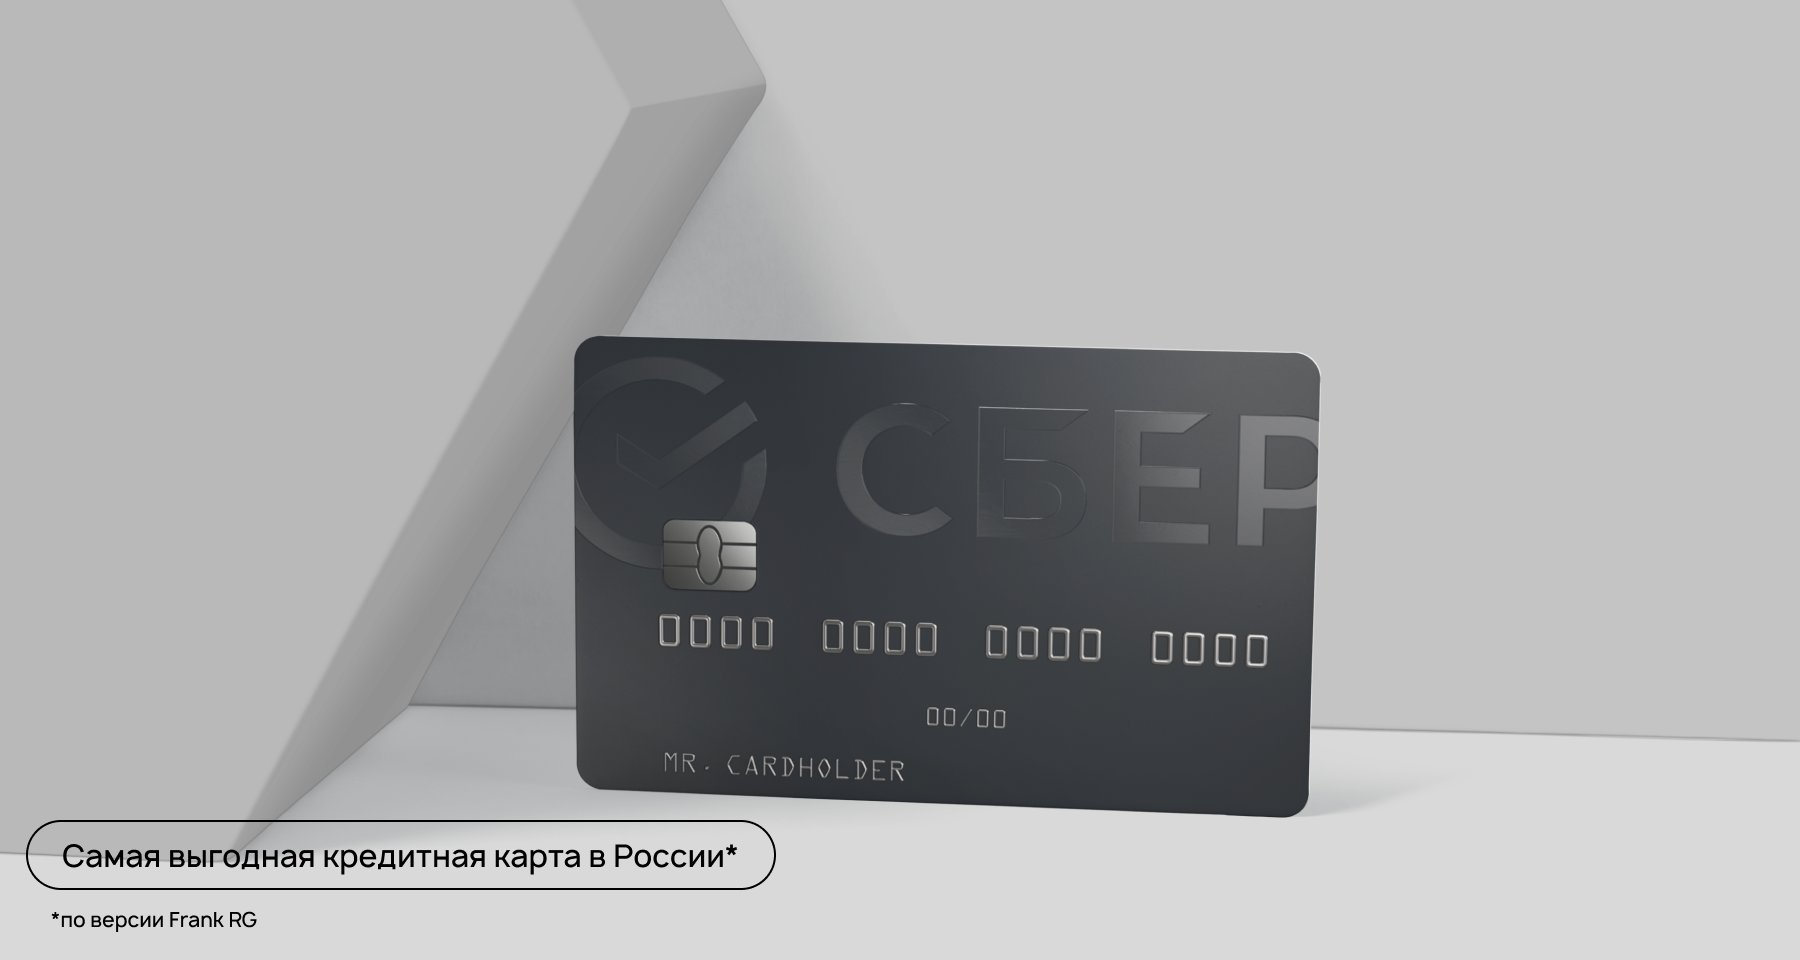 Кредитная СберКарта — самая выгодная кредитная карта в России по мнению экспертов